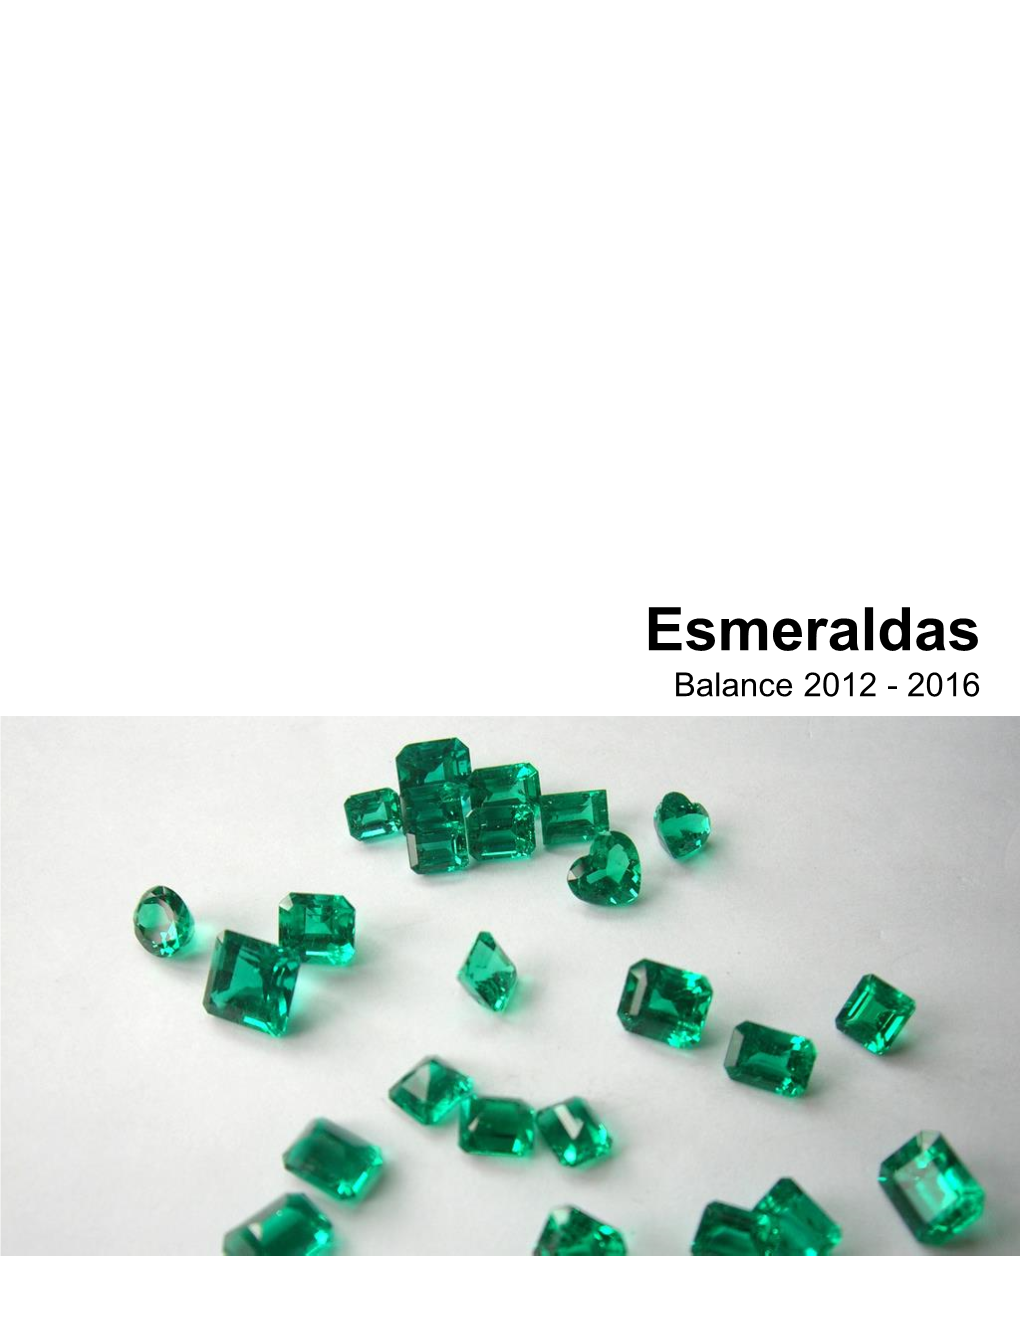 Esmeraldas Balance 2012 - 2016